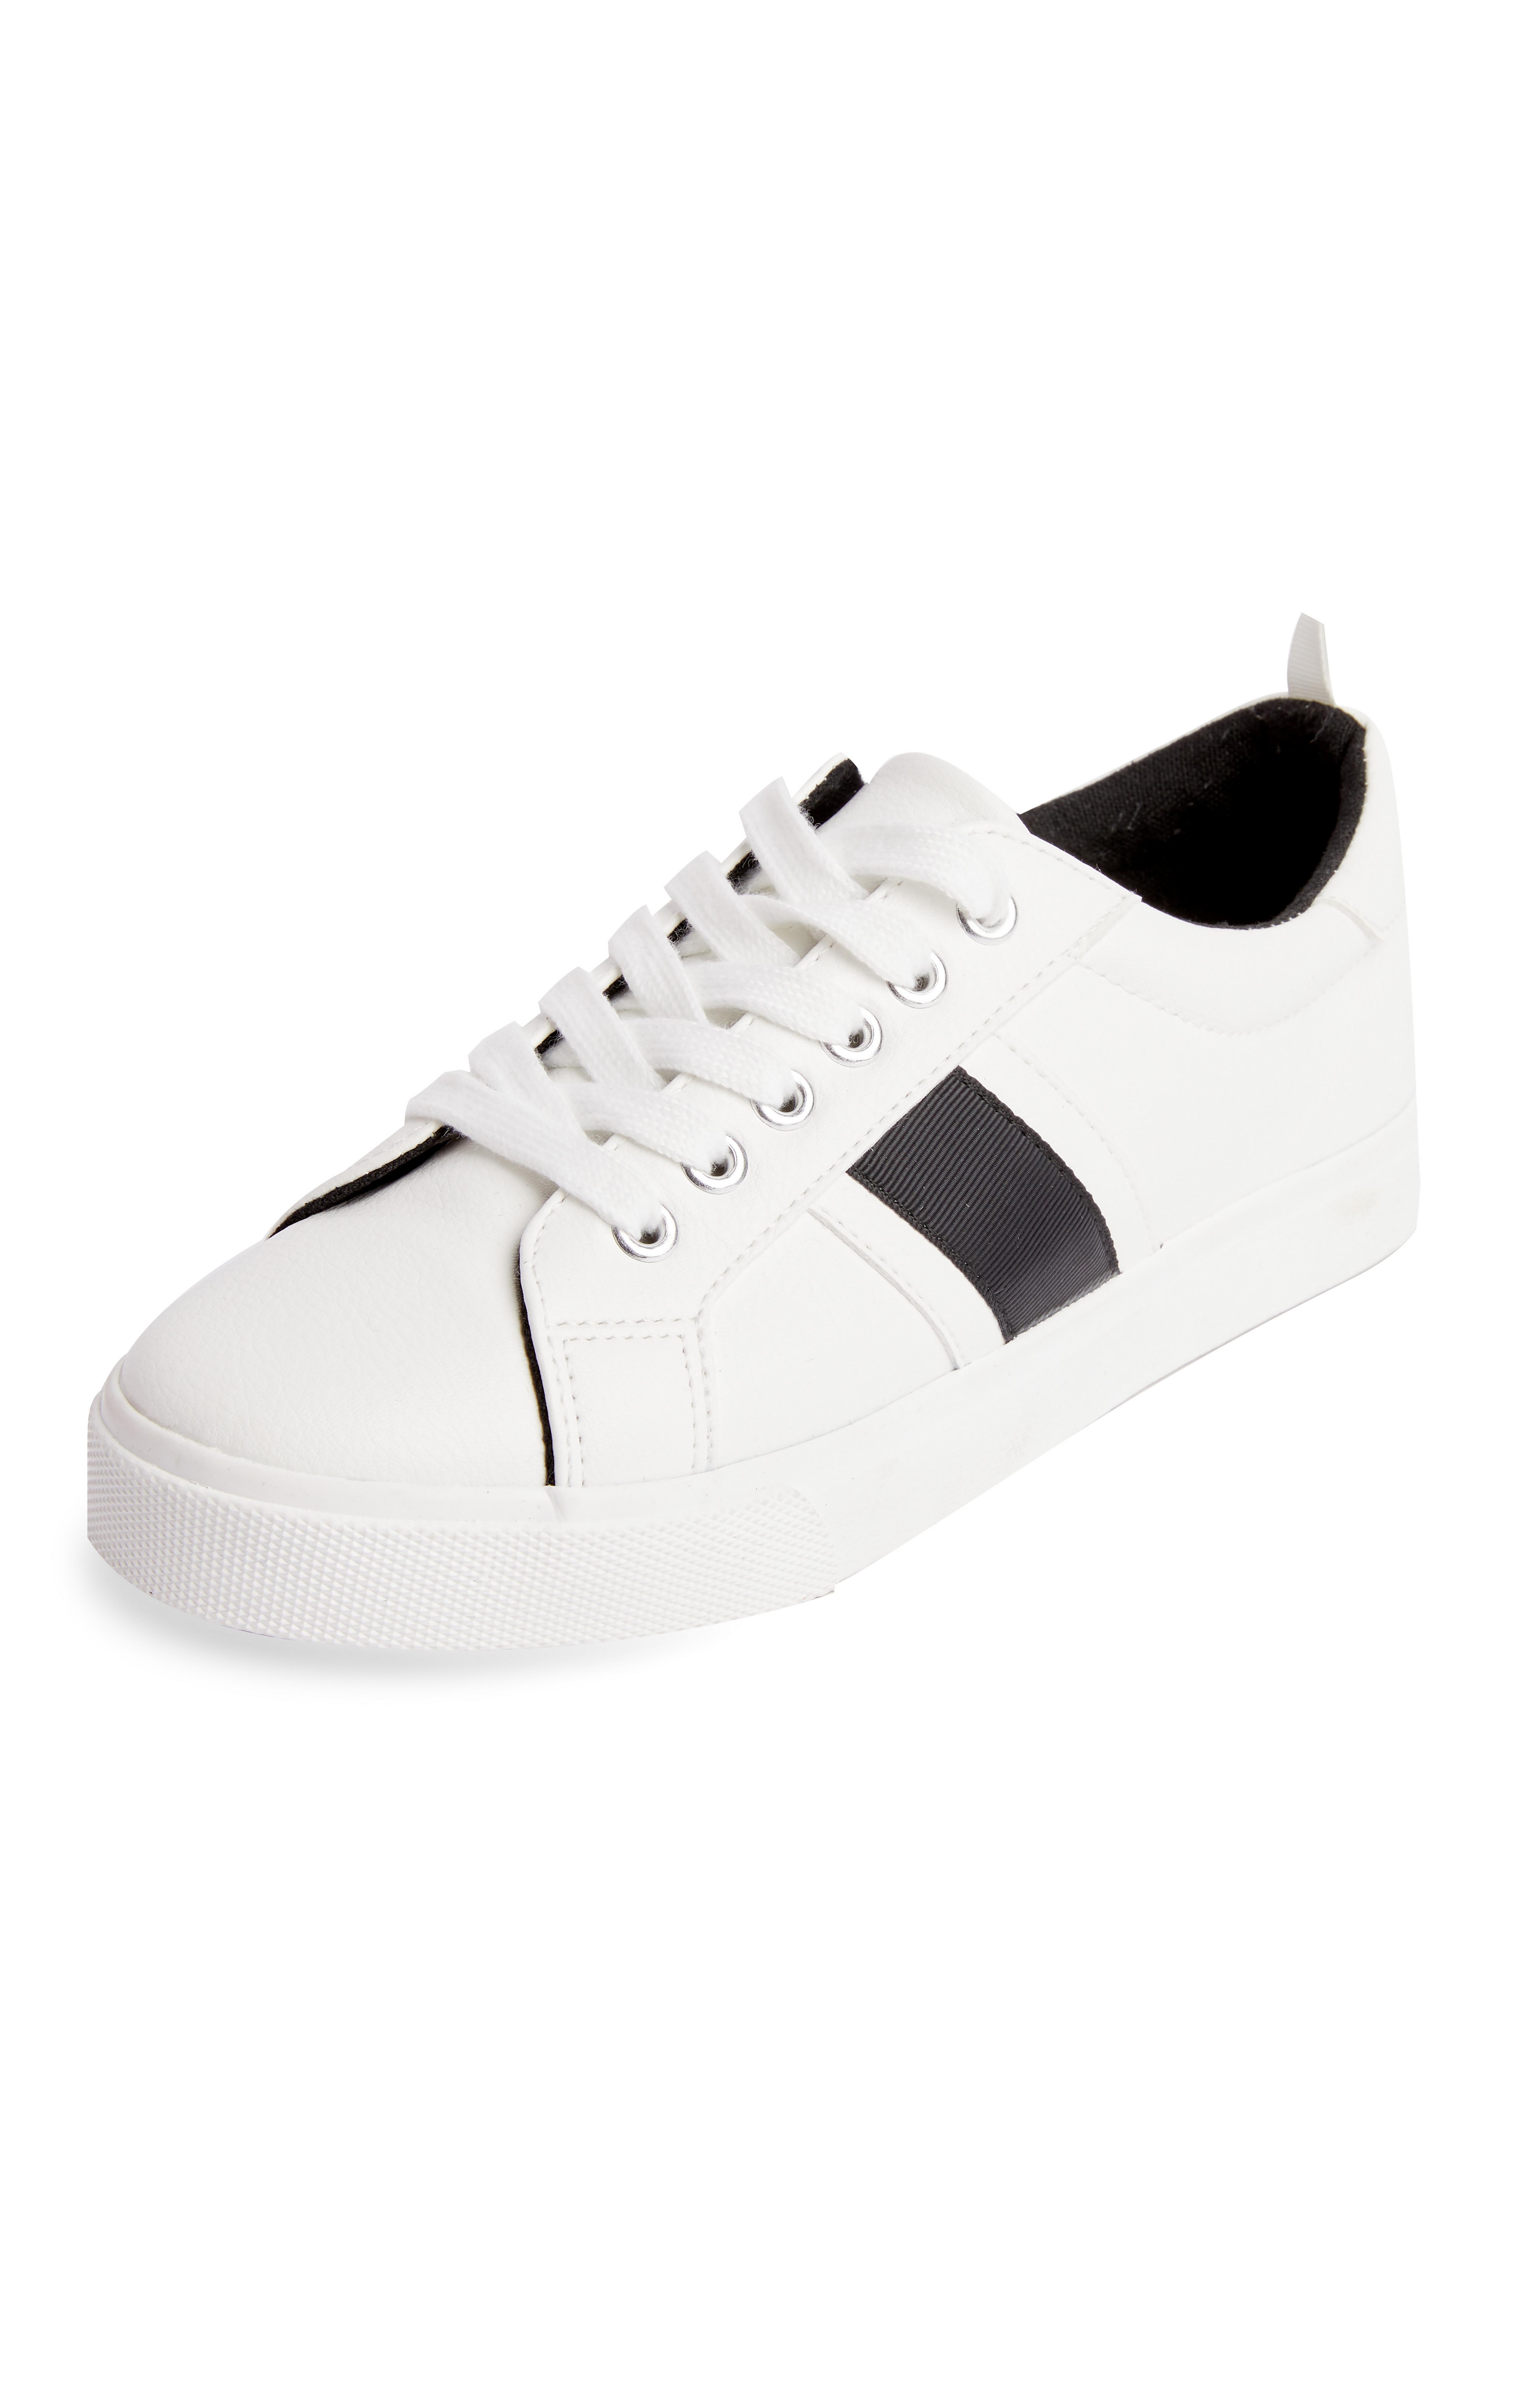 White Side Stripe Low Tops | Women's Sneakers | Women's Shoes & Boots ...